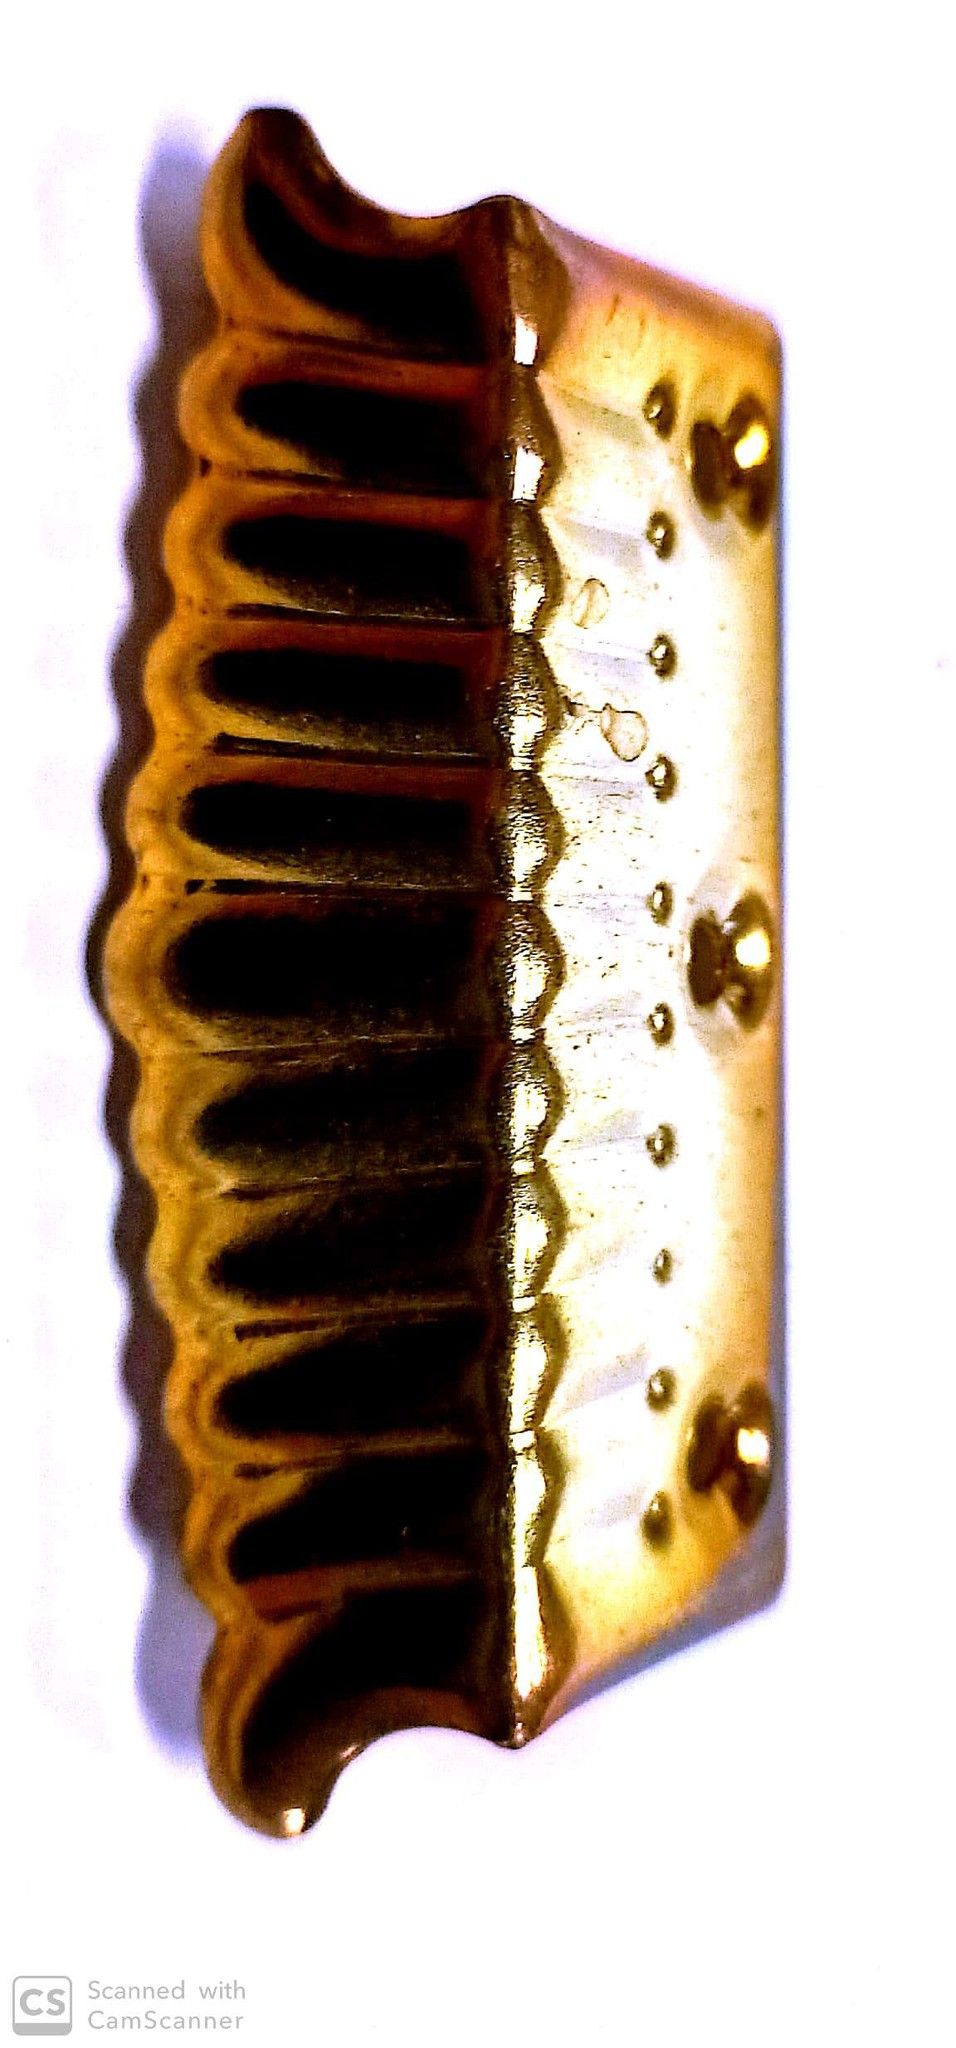 Reggispecchi a ventaglio mm 70 in ferro ottonato